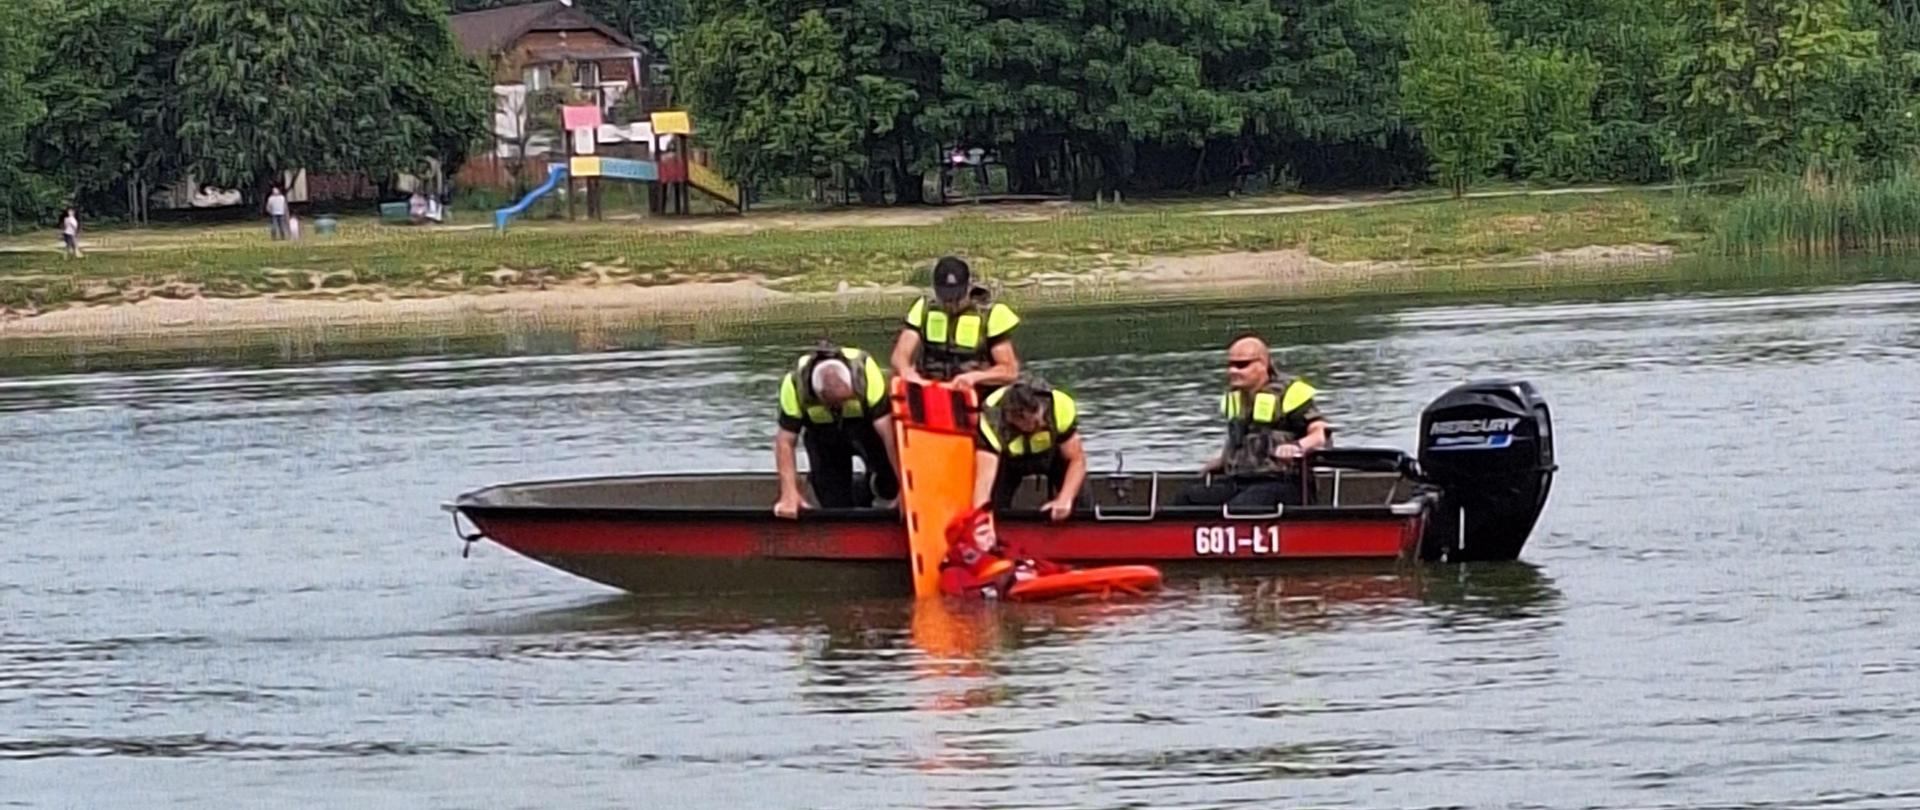 Zdjęcie wykonane z brzegu, na wodzie pływa łódź strażacka. W łodzi jest czterech ratowników, którzy wyciągają z wody strażaka w czerwonym skafandrze.